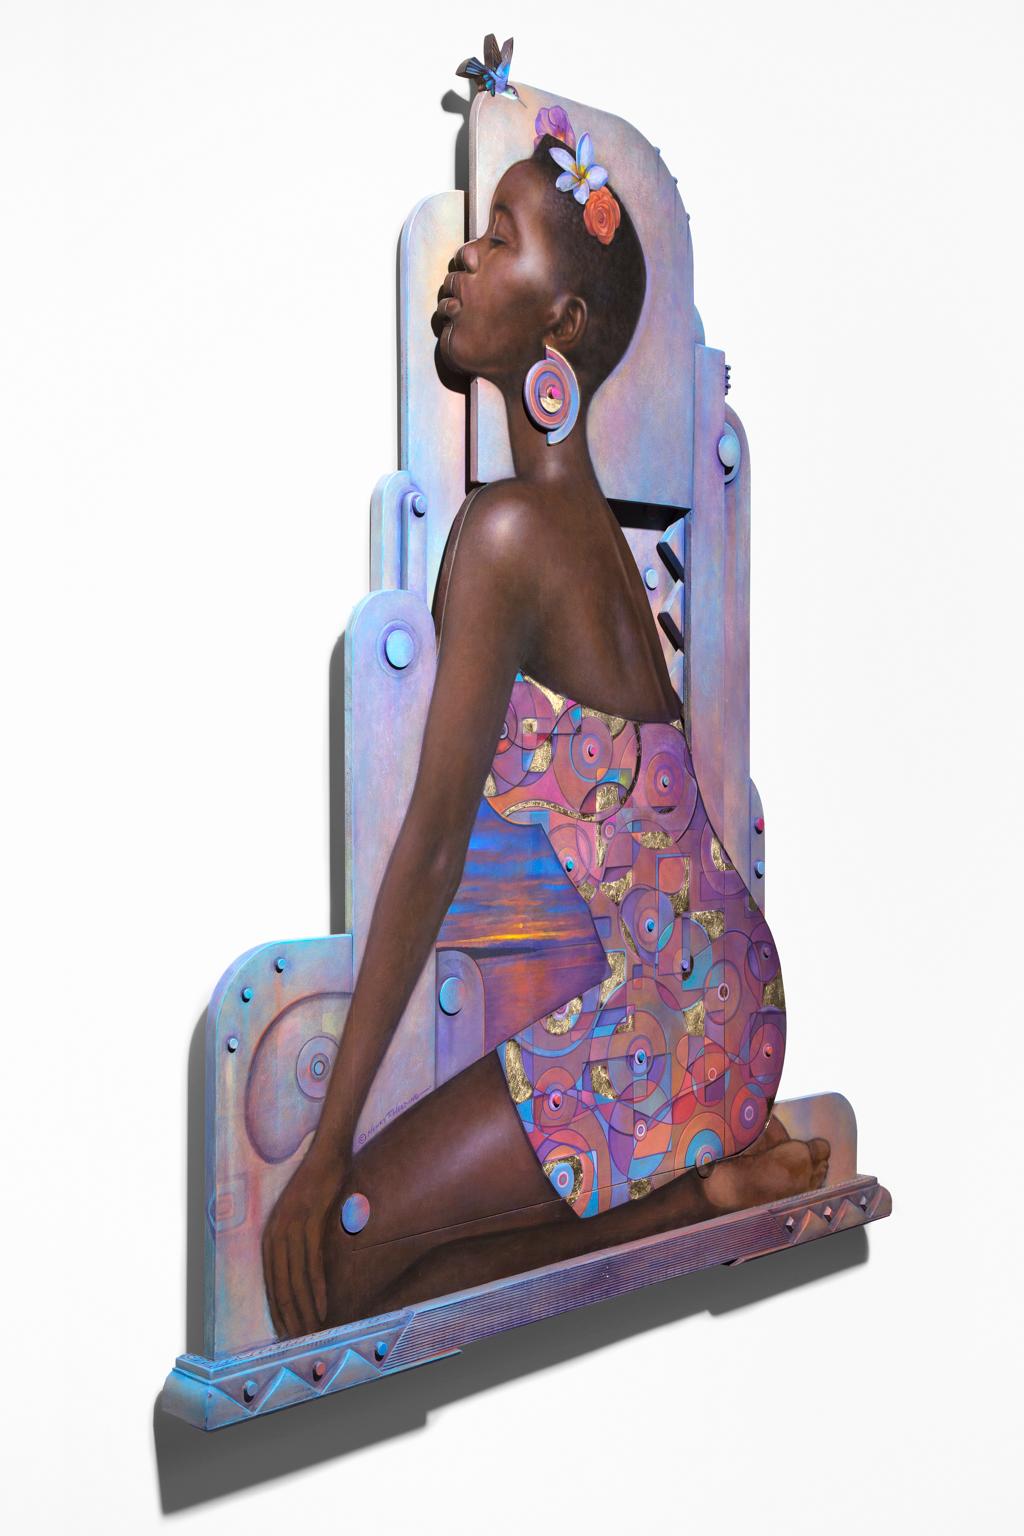 Portrait de femme afro-américaine « Reine », bruns riches et lavandes, sculptural - Painting de Henry Heading